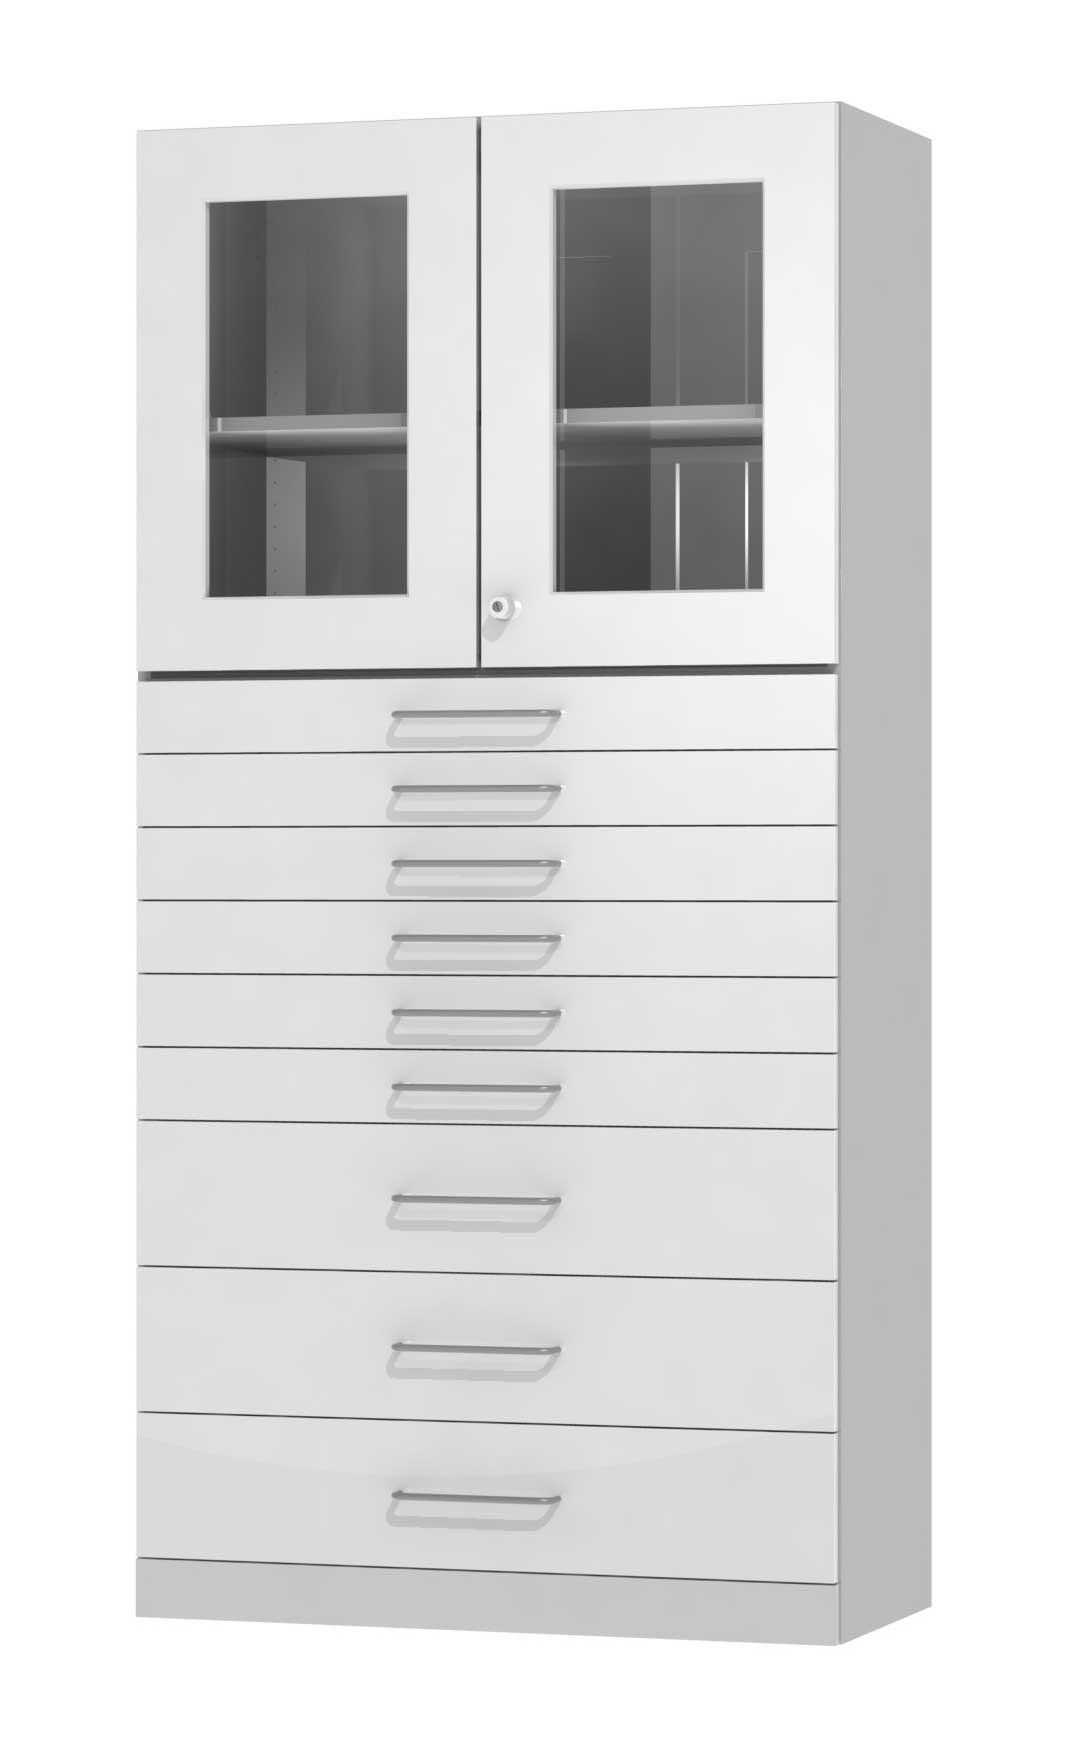 Combinația dintre un dulap de bază cu sertare și unul superior cu uși de sticlă